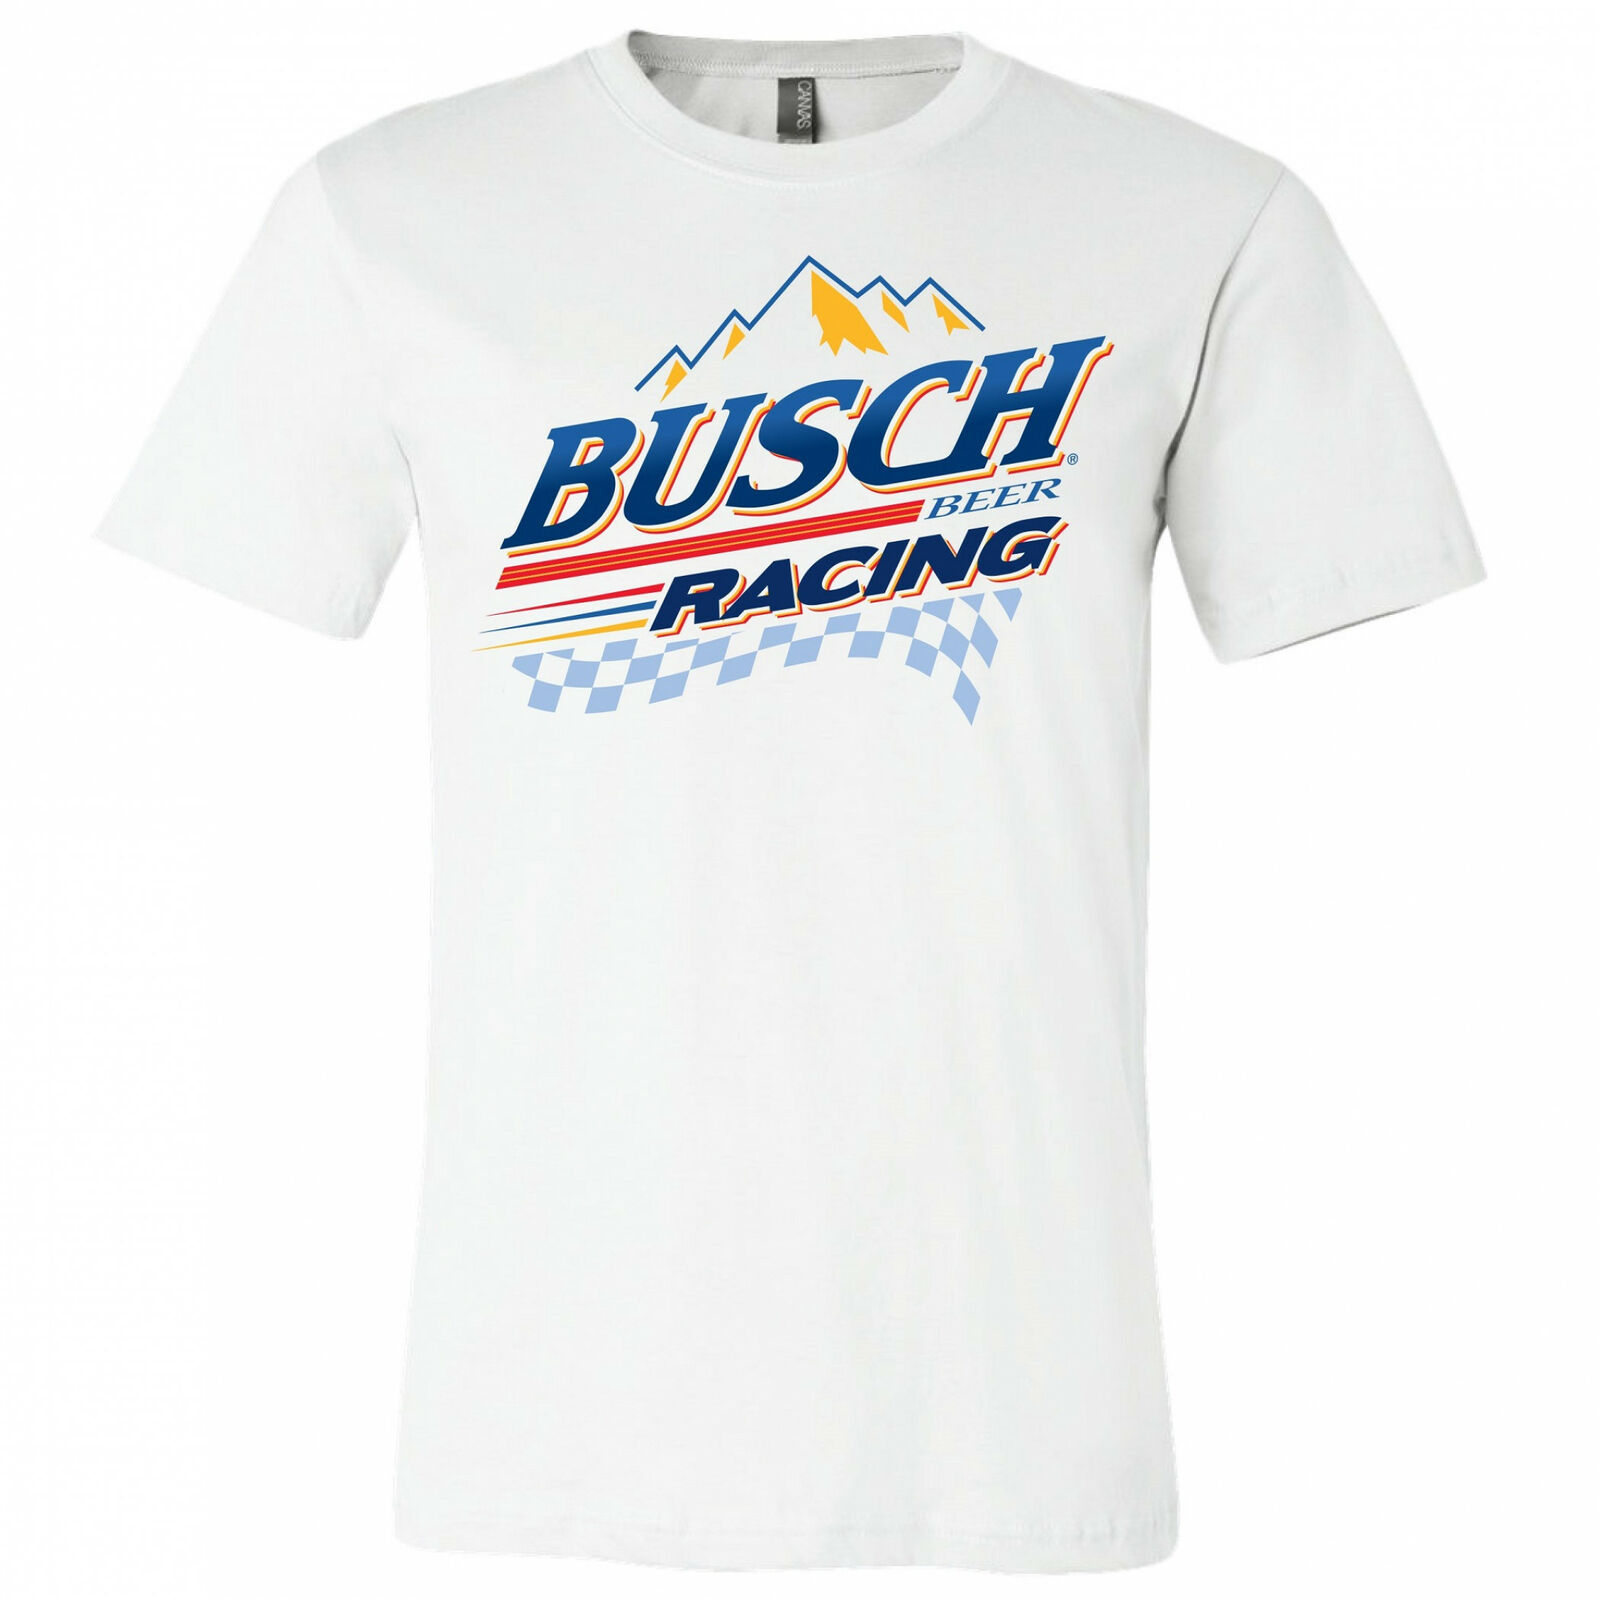 Busch Racing Mountain Logo T-Shirt White - $33.98 - $36.98